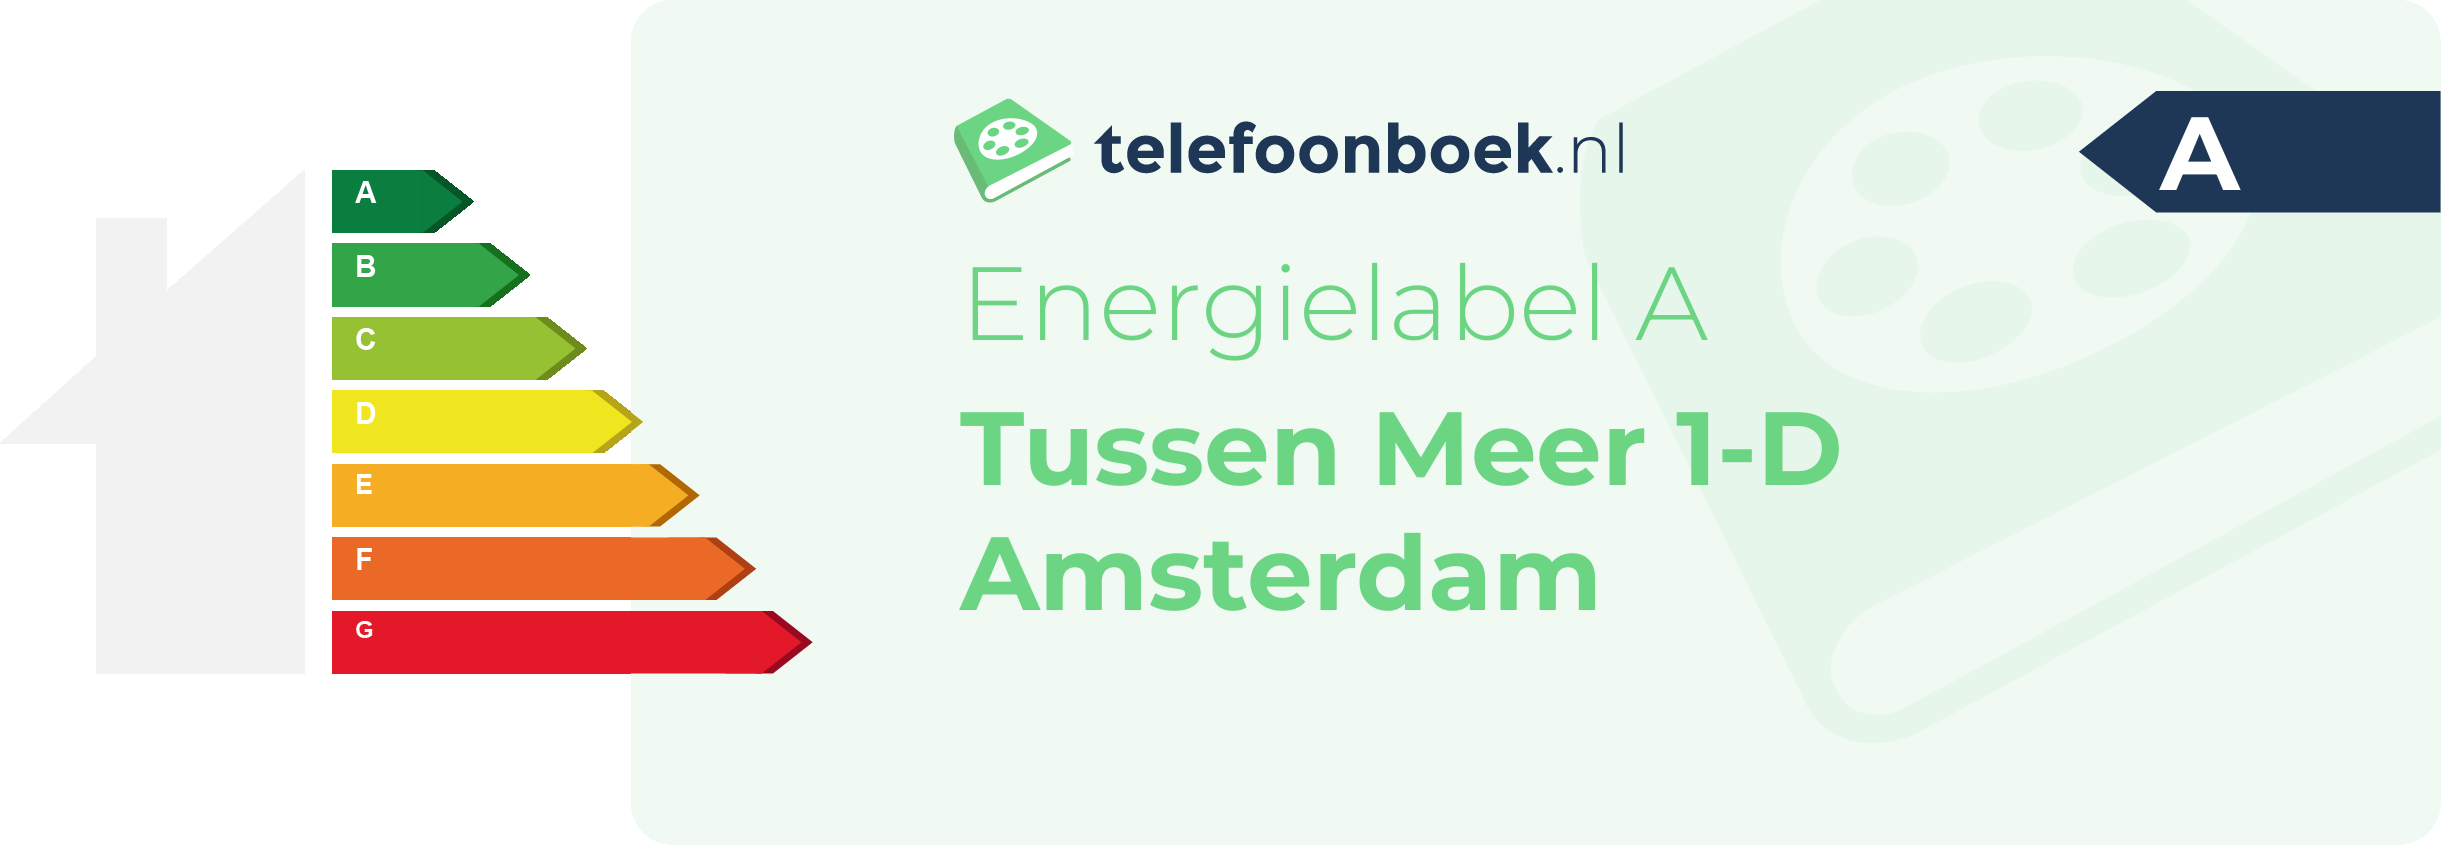 Energielabel Tussen Meer 1-D Amsterdam